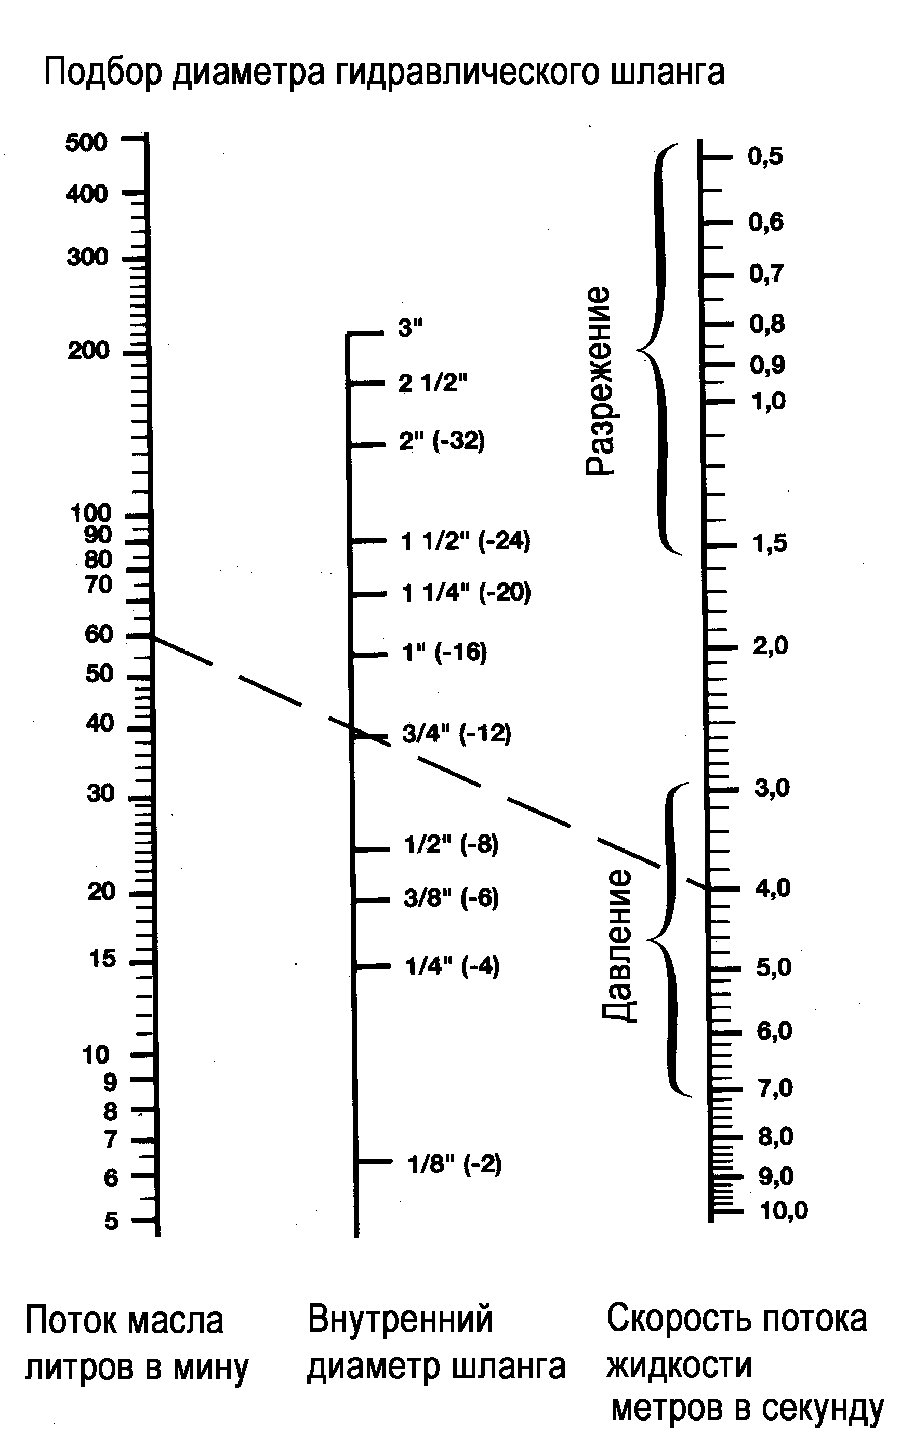 Диаграмма для подбора диаметра гидравлического шланга